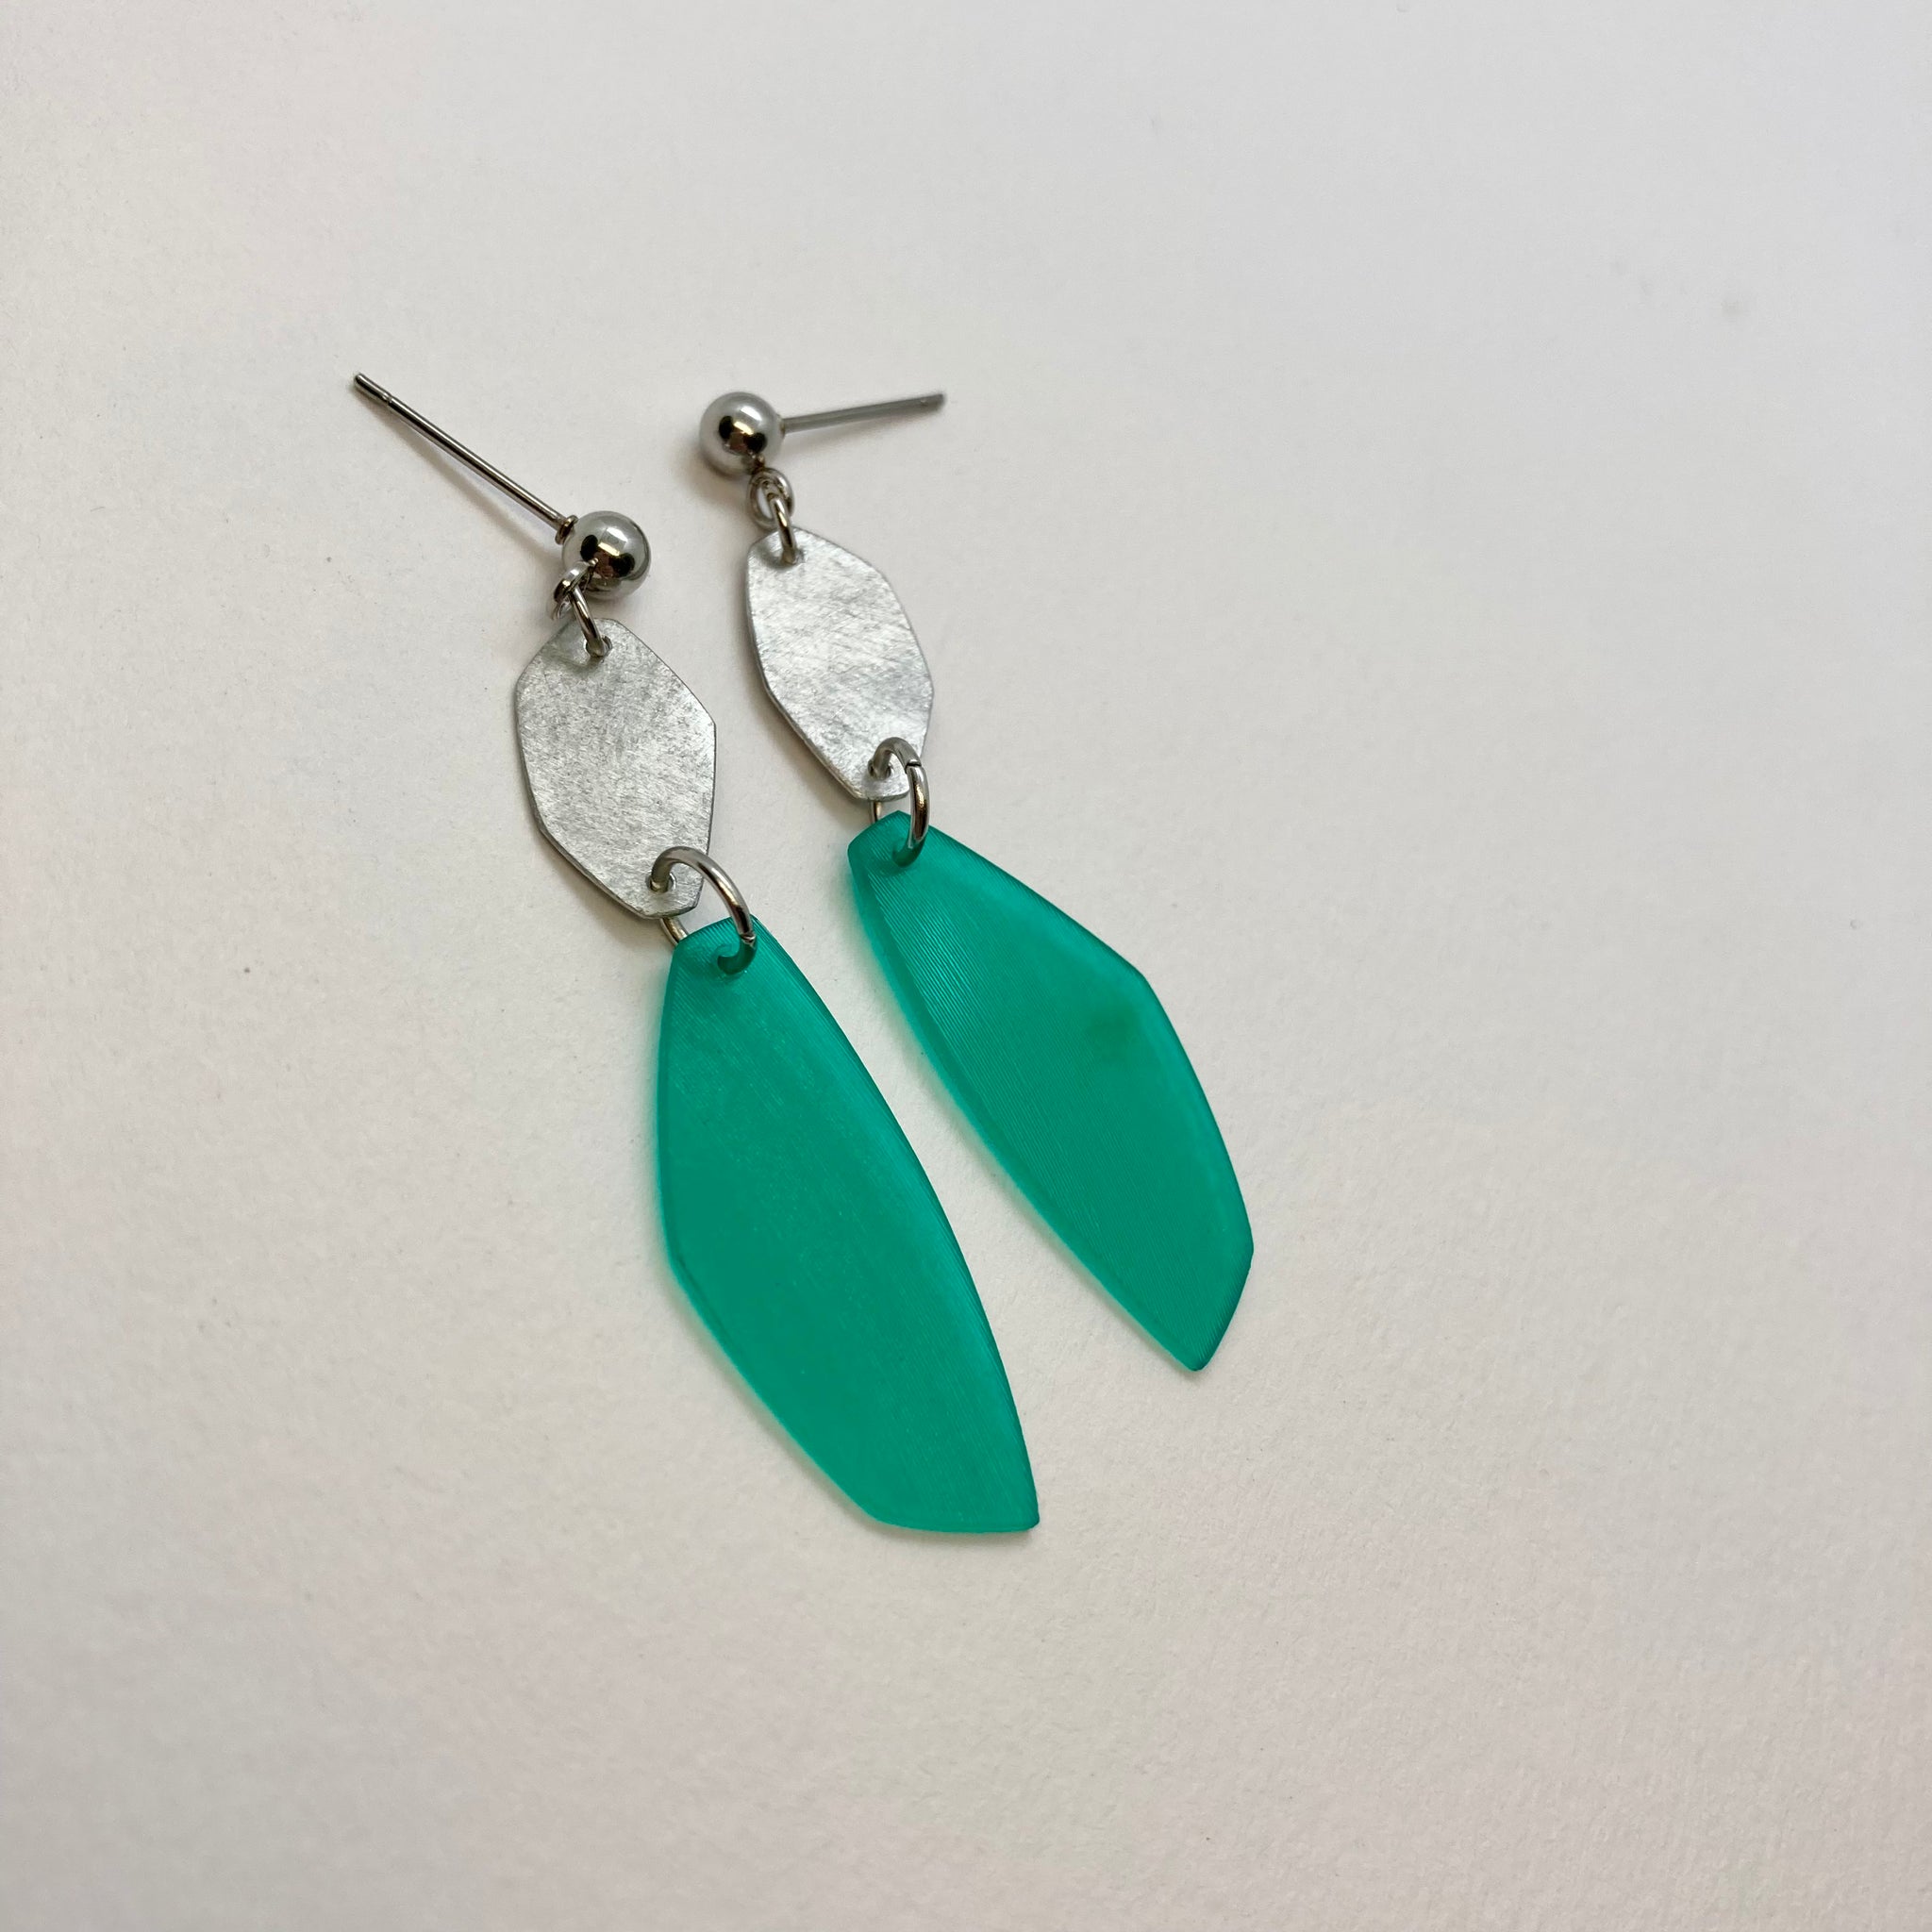 Green steel earrings